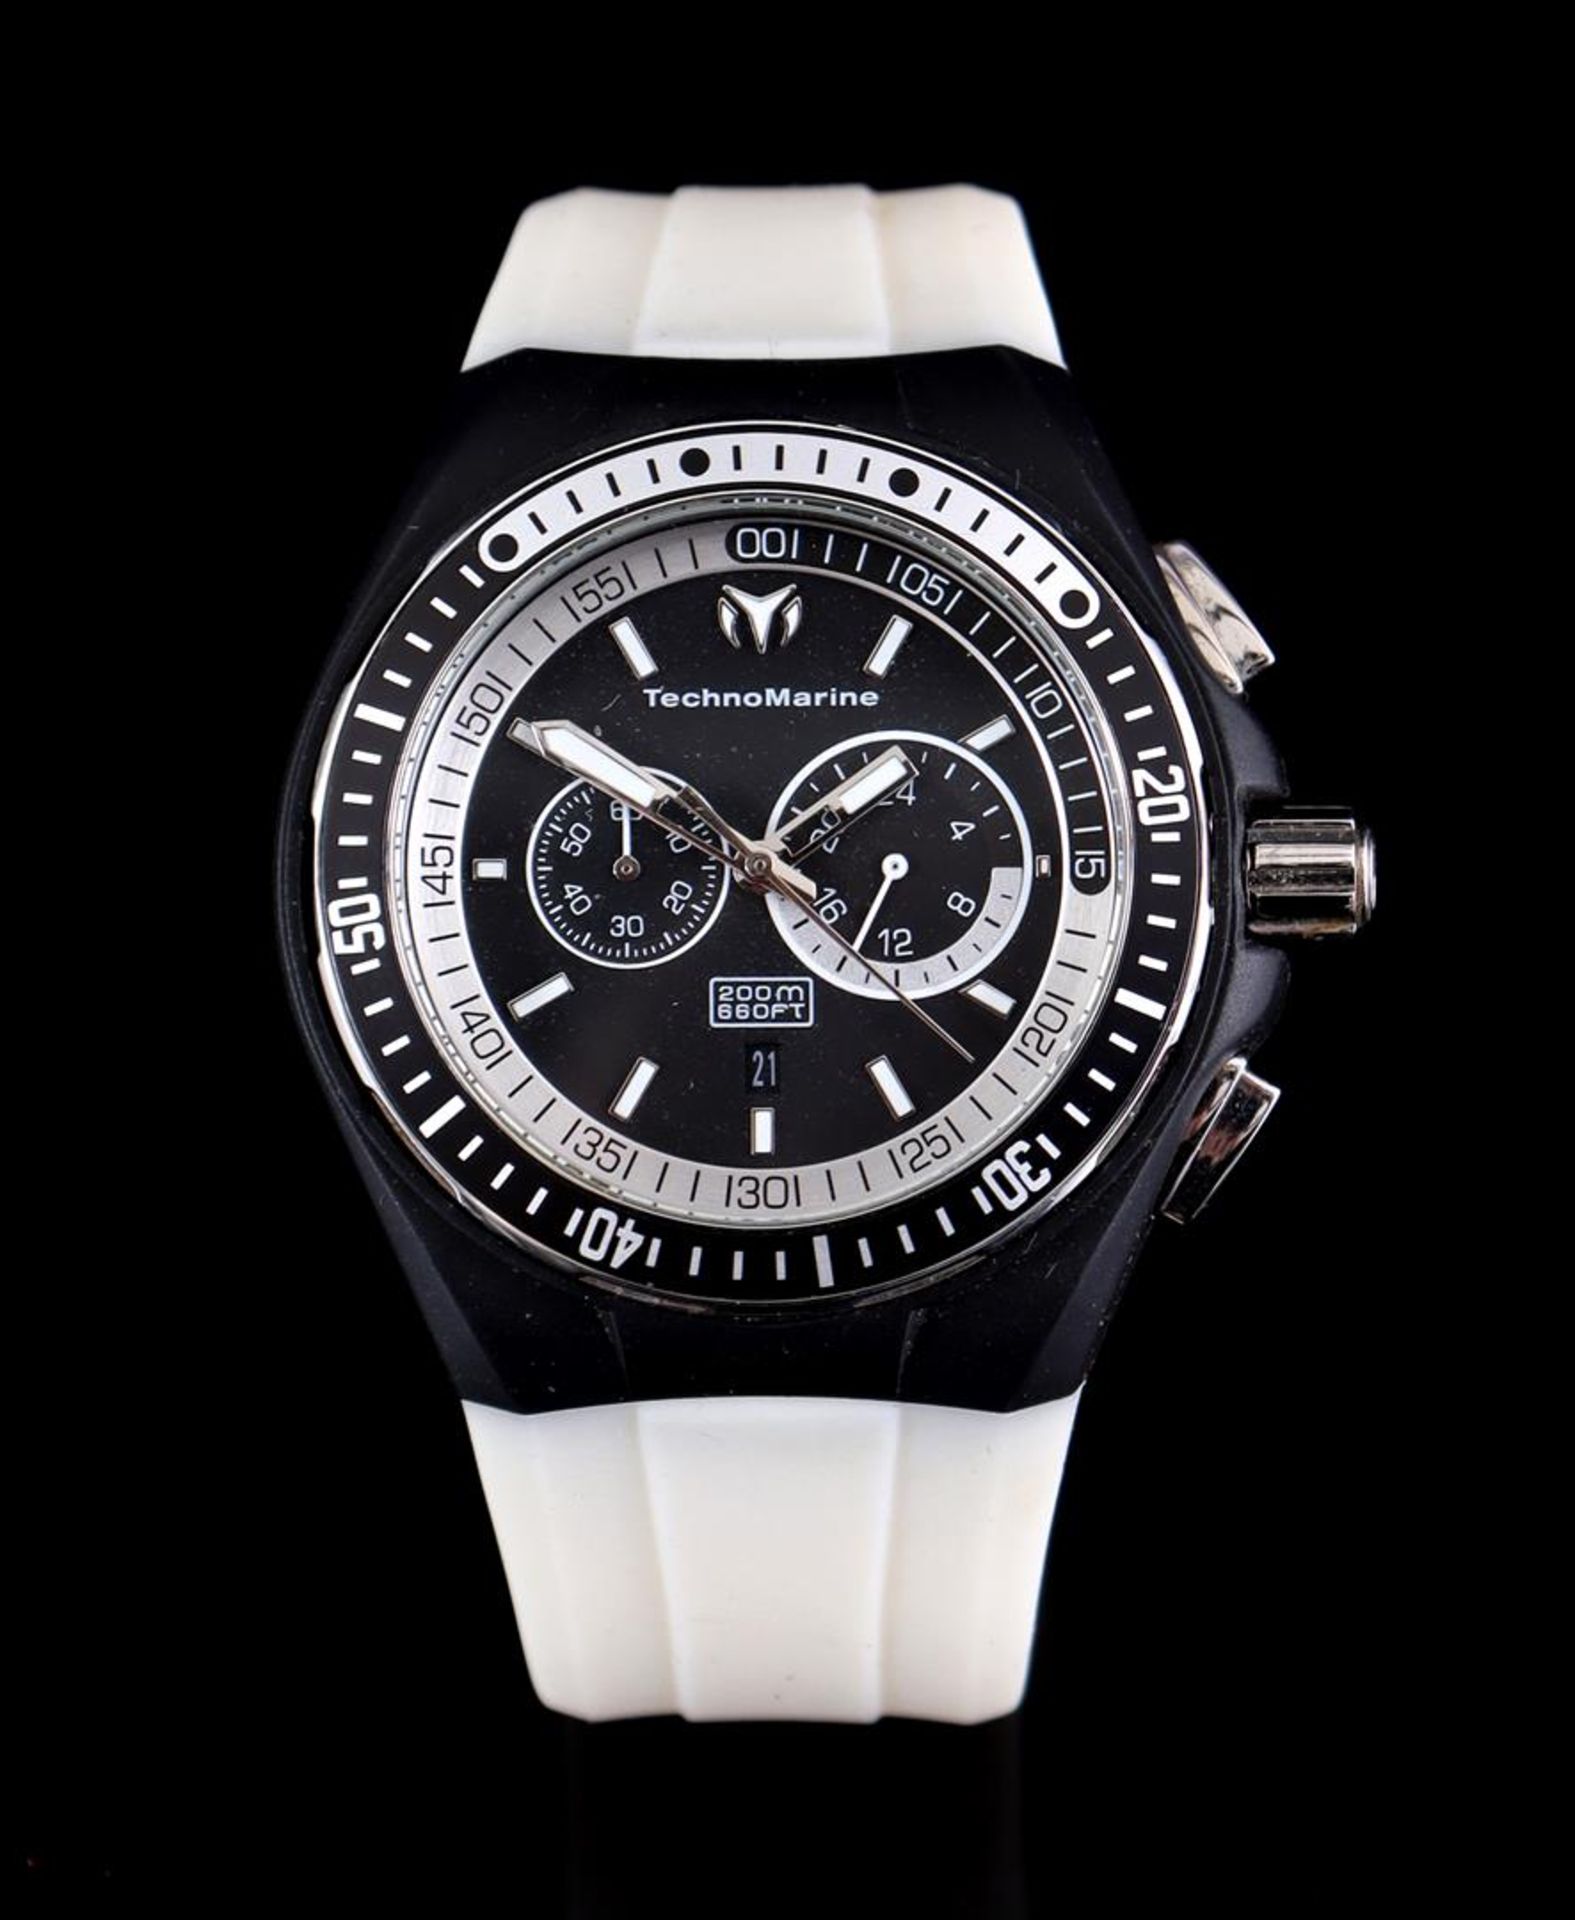 TechnoMarine men's wristwatch